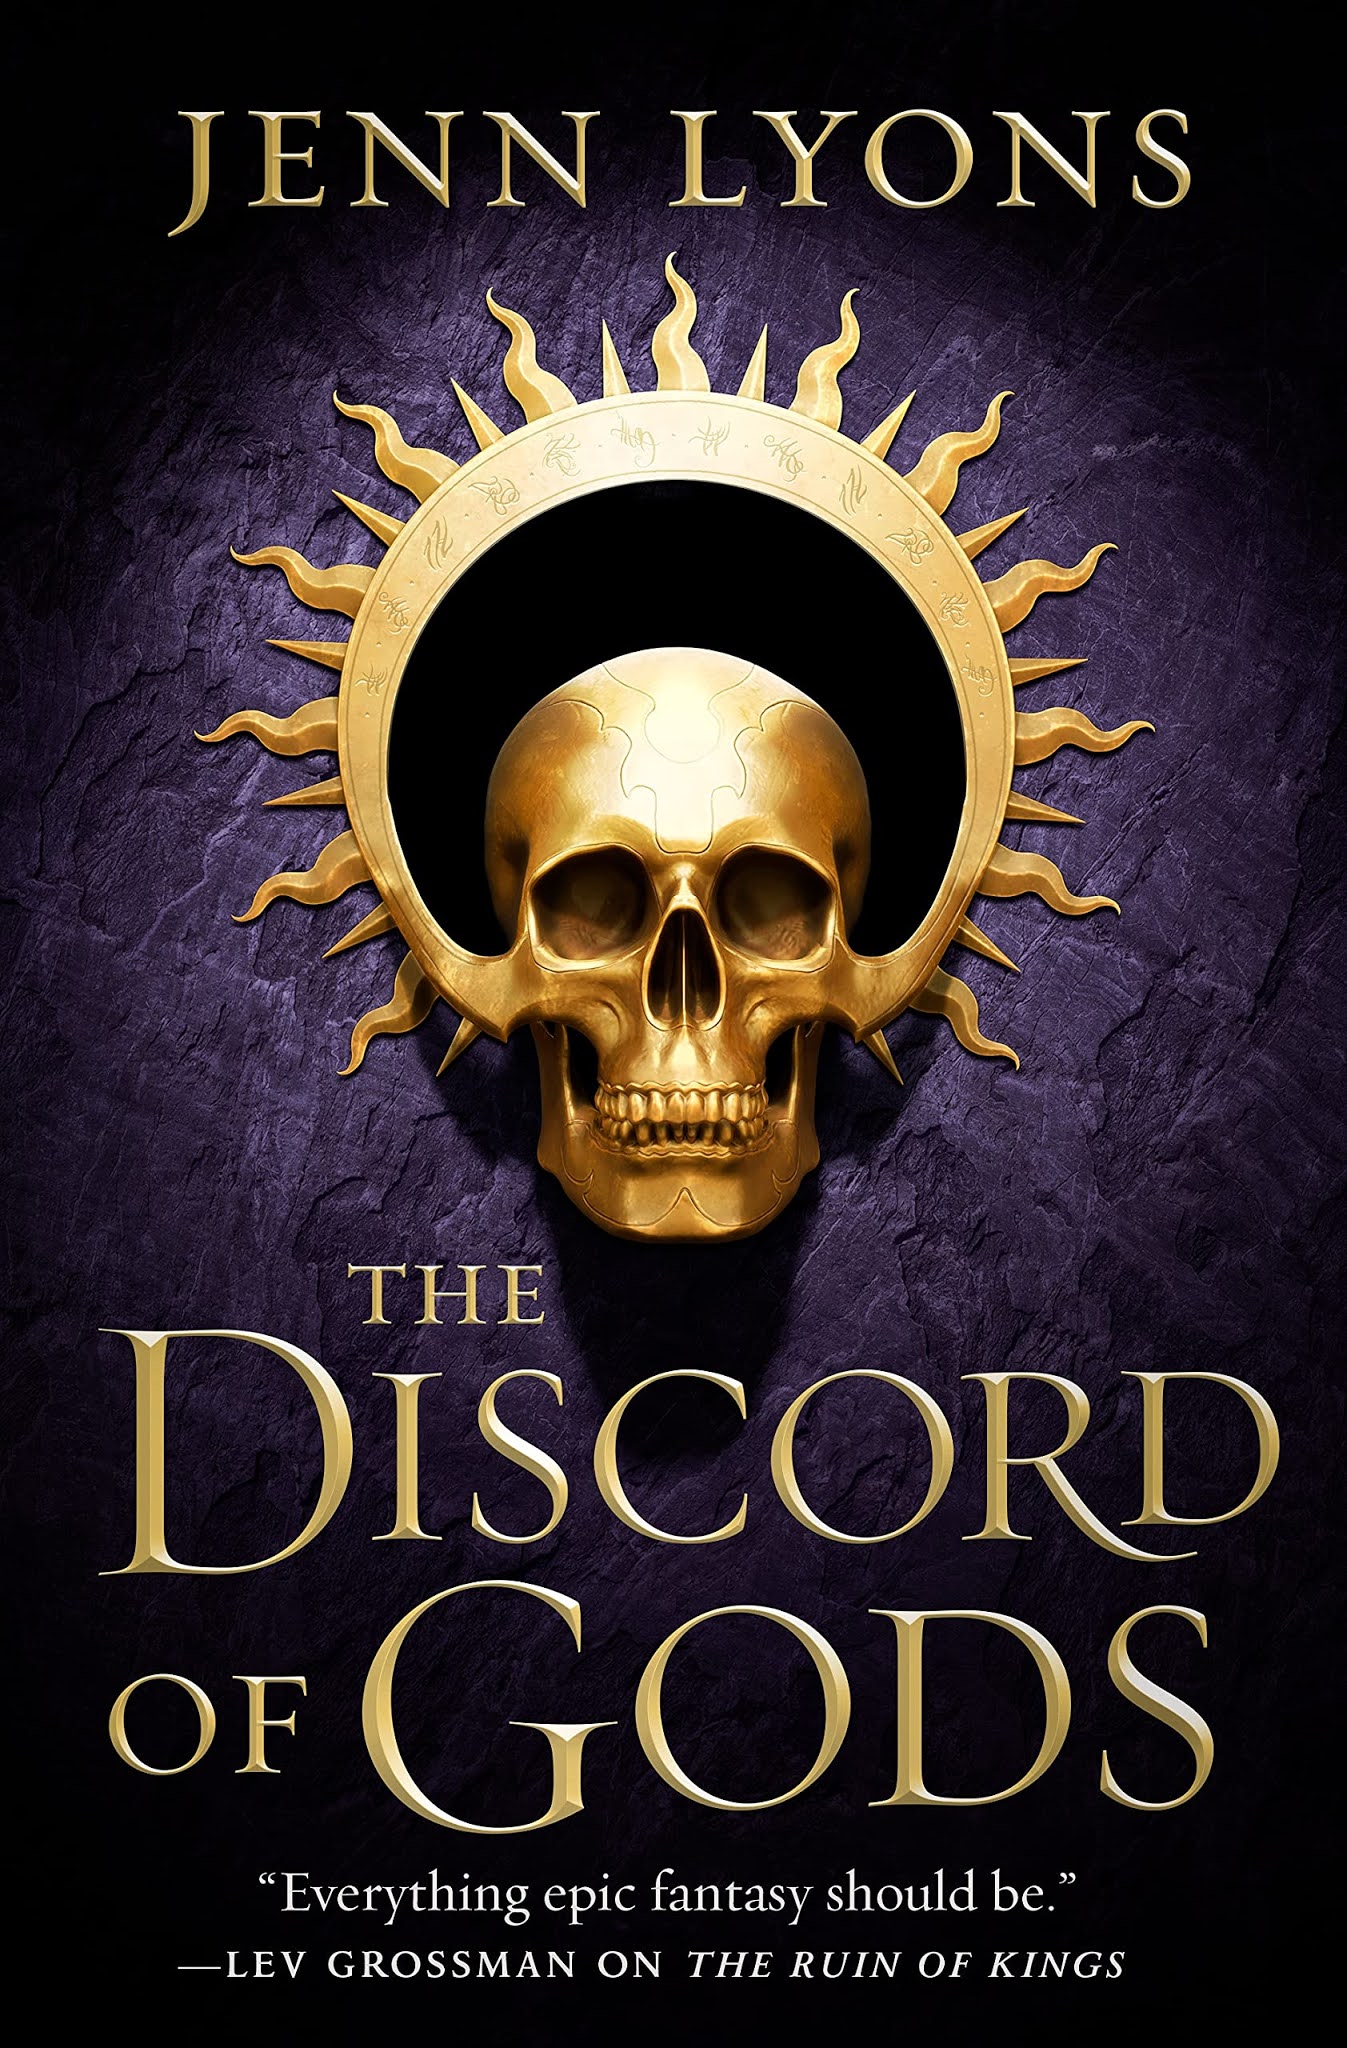 The Discord of Gods by Jenn Lyons